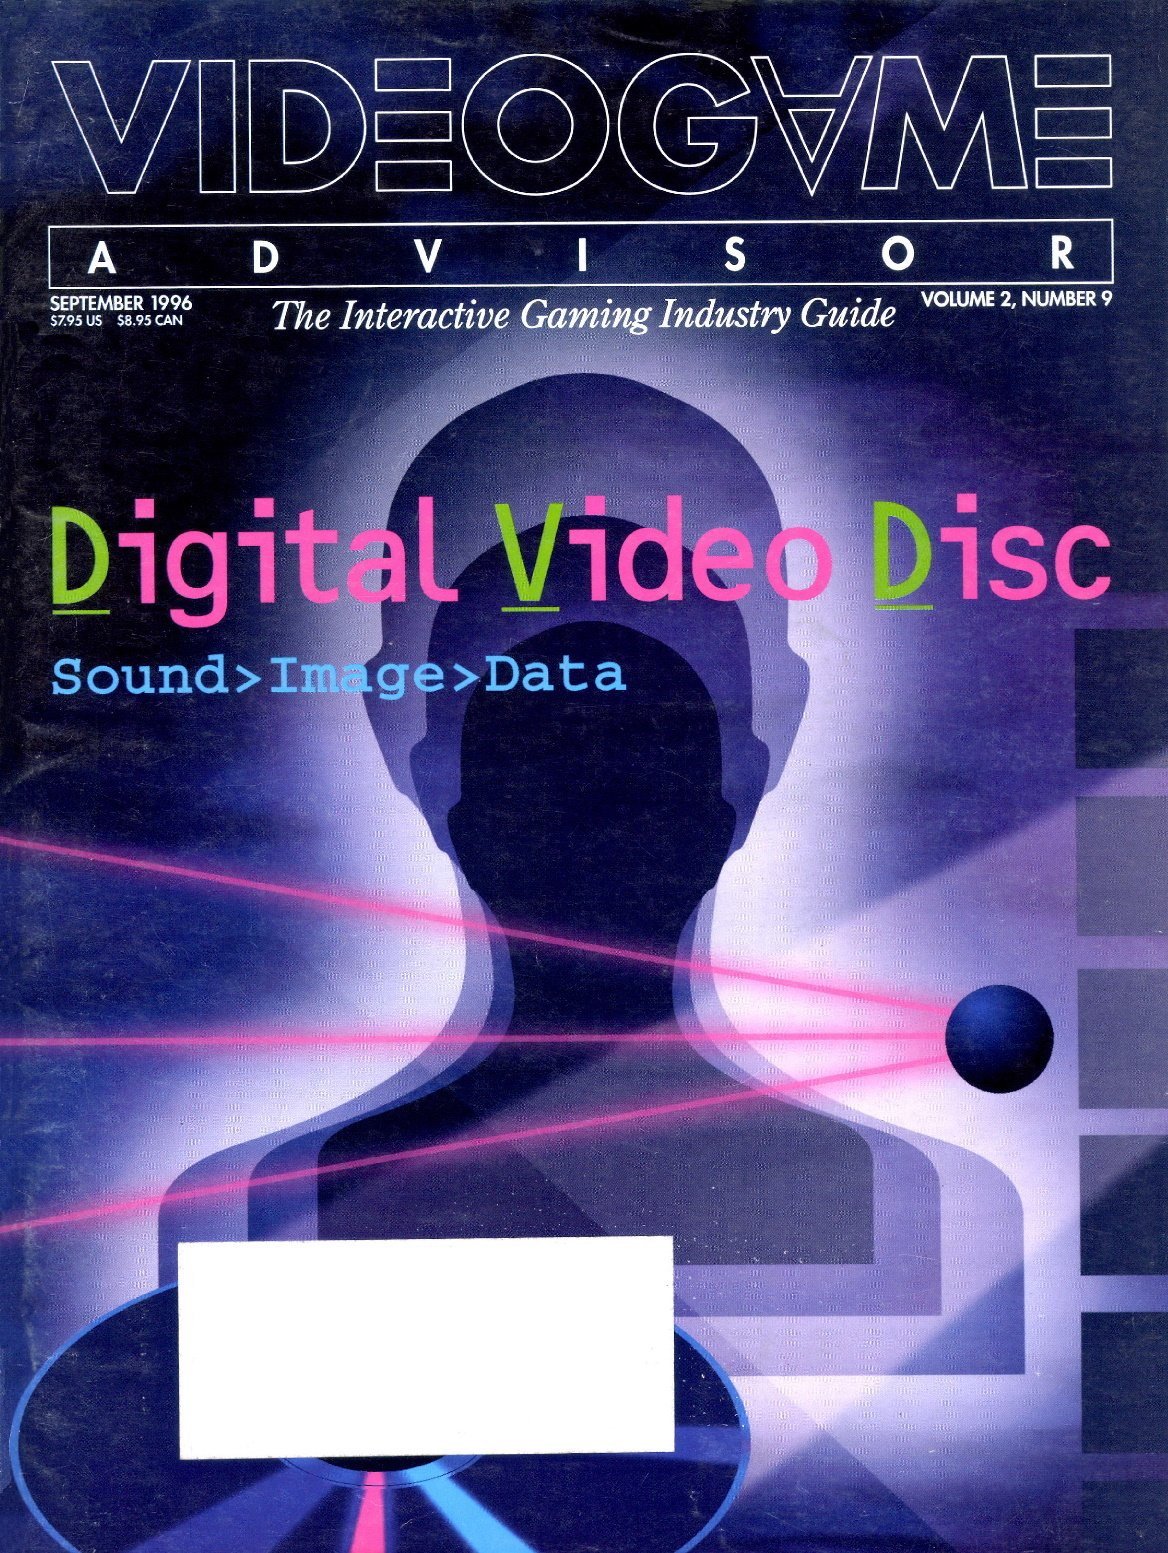 VideoGame Advisor Issue 09 (September 1996)